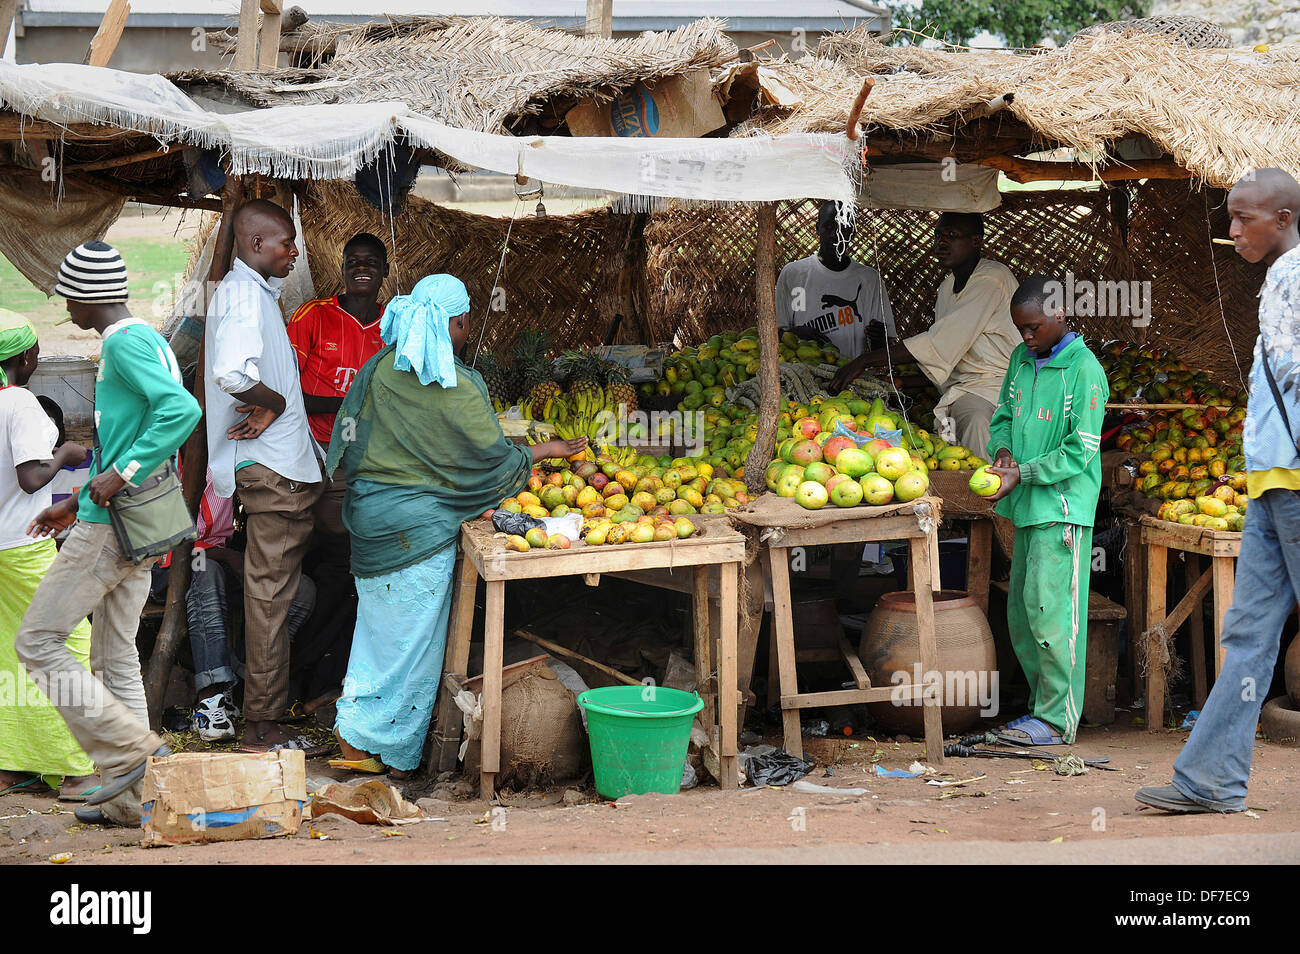 Stallo con la frutta e le verdure su una strada transitabile, Garoua, Regione Nord, Camerun Foto Stock